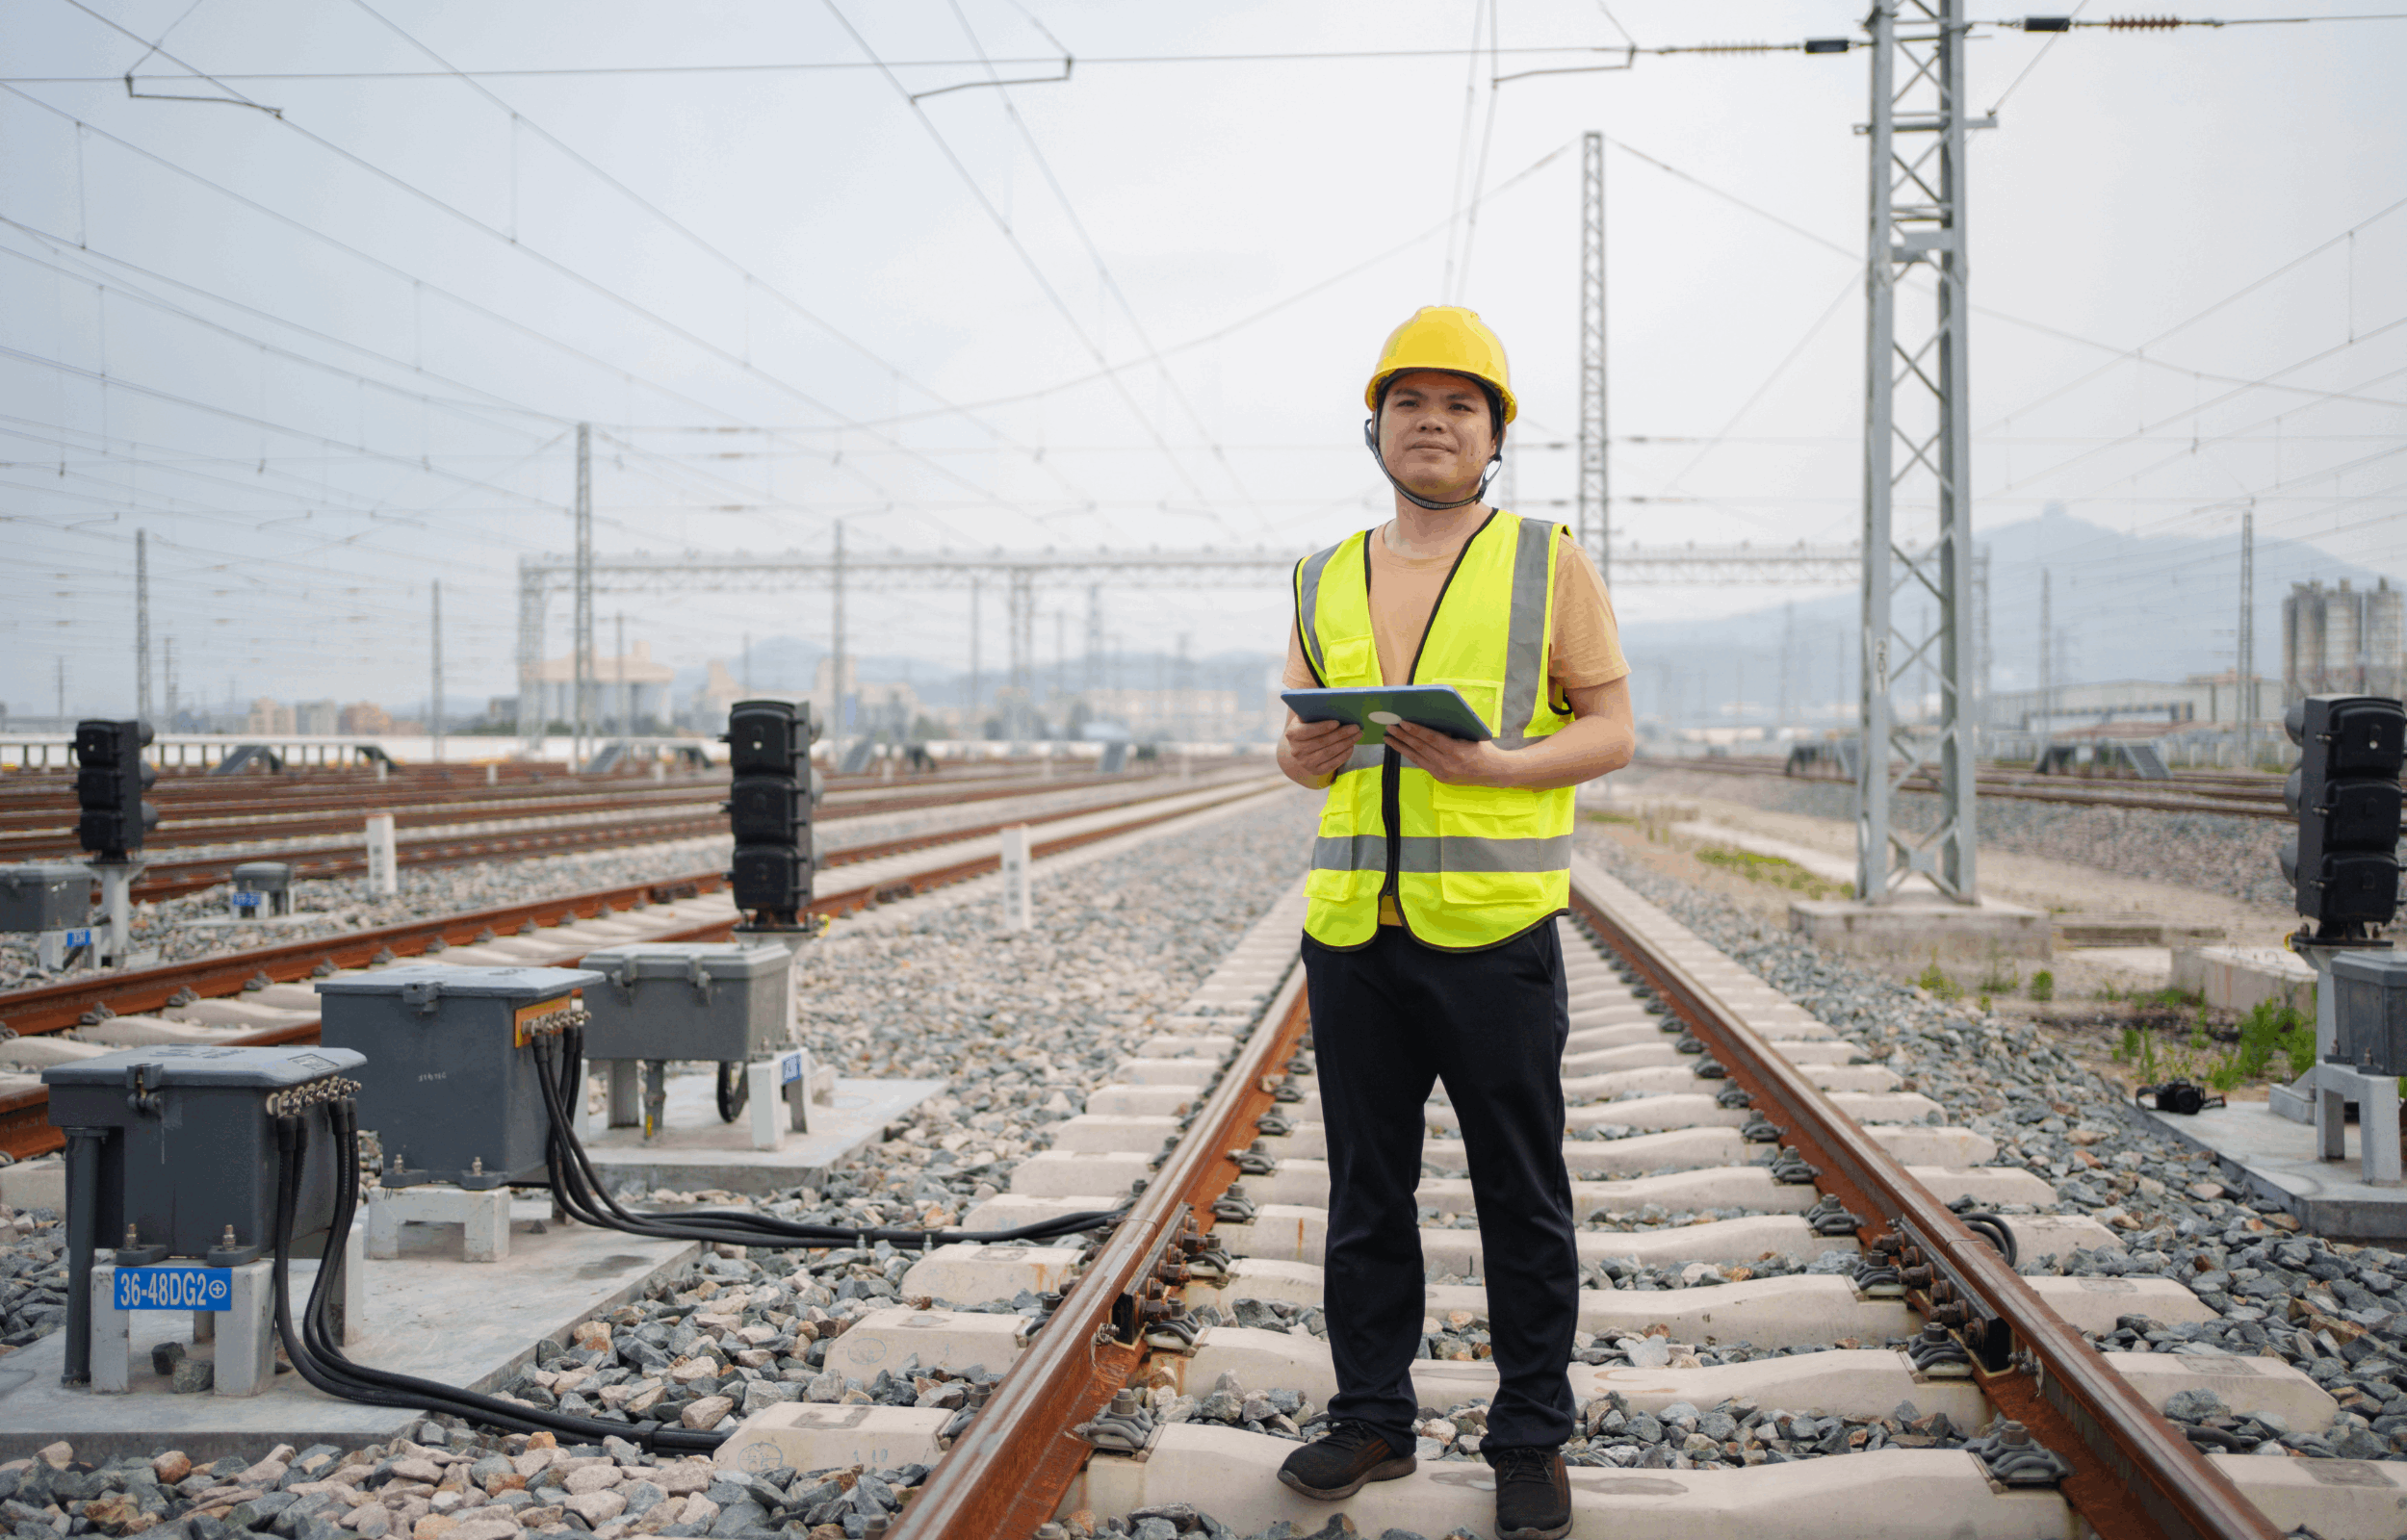 Rail industry worker